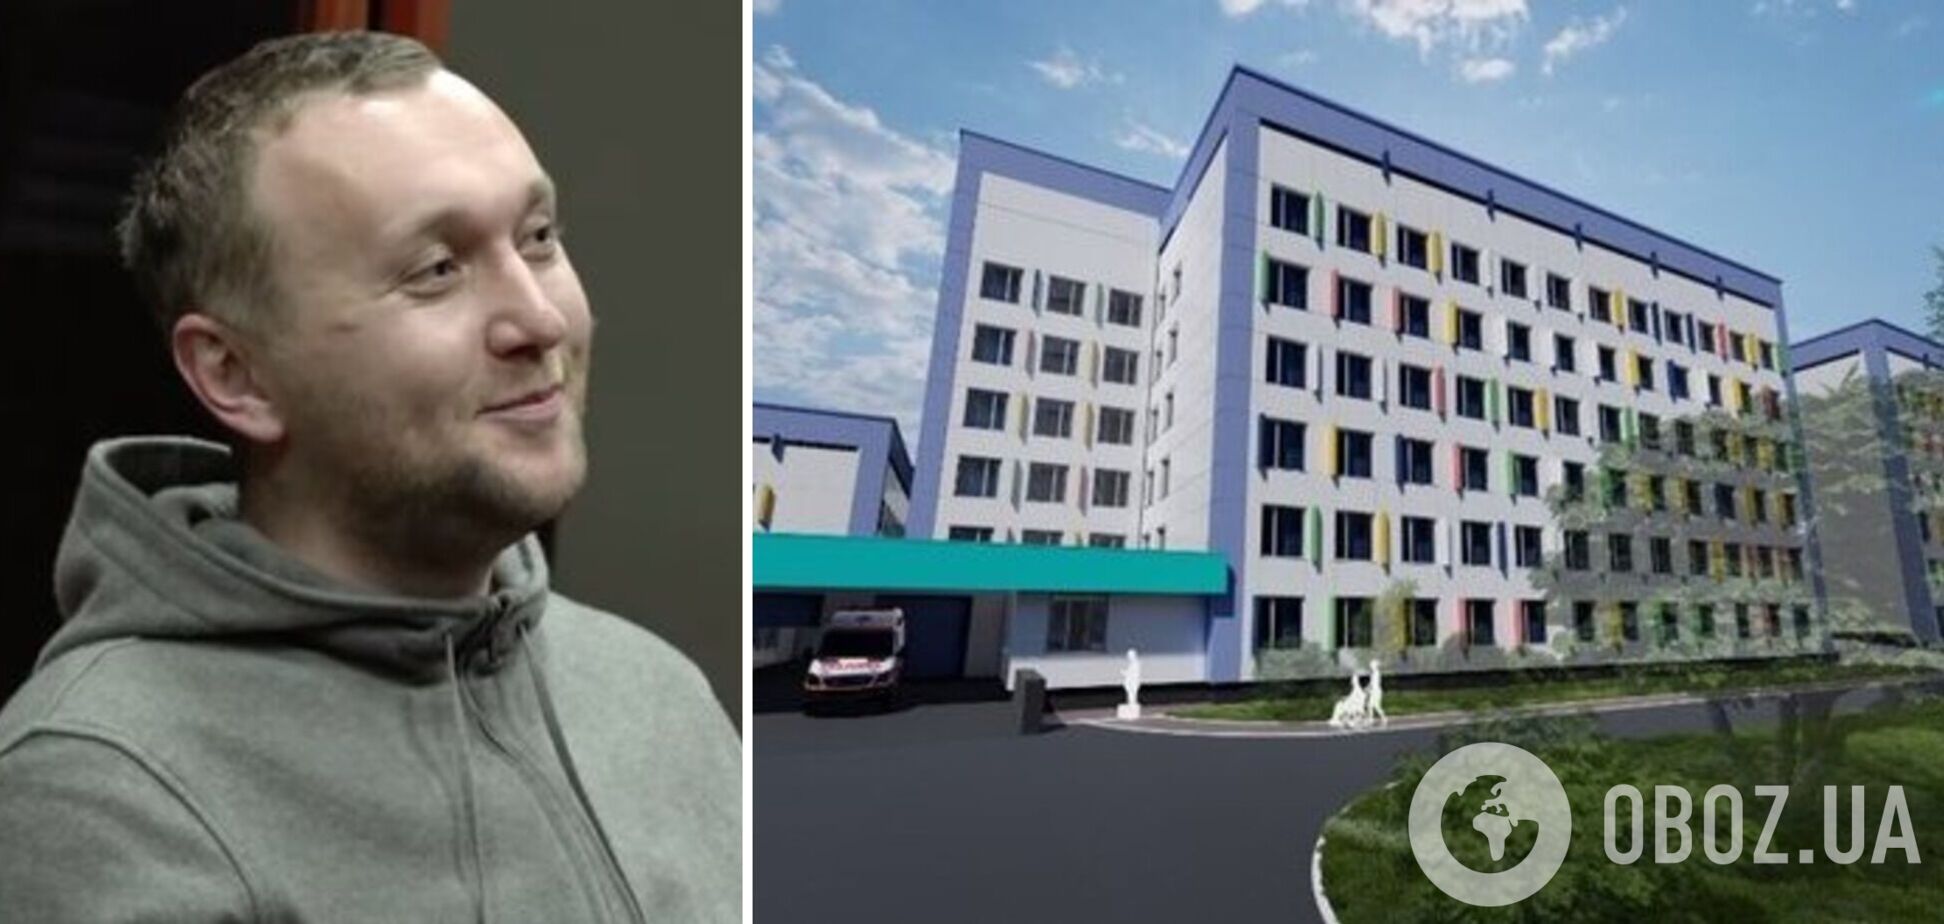 Житомирская ОГА заказала реконструкцию детской больницы за 361 млн грн с завышенными ценами на стройматериалы – СМИ